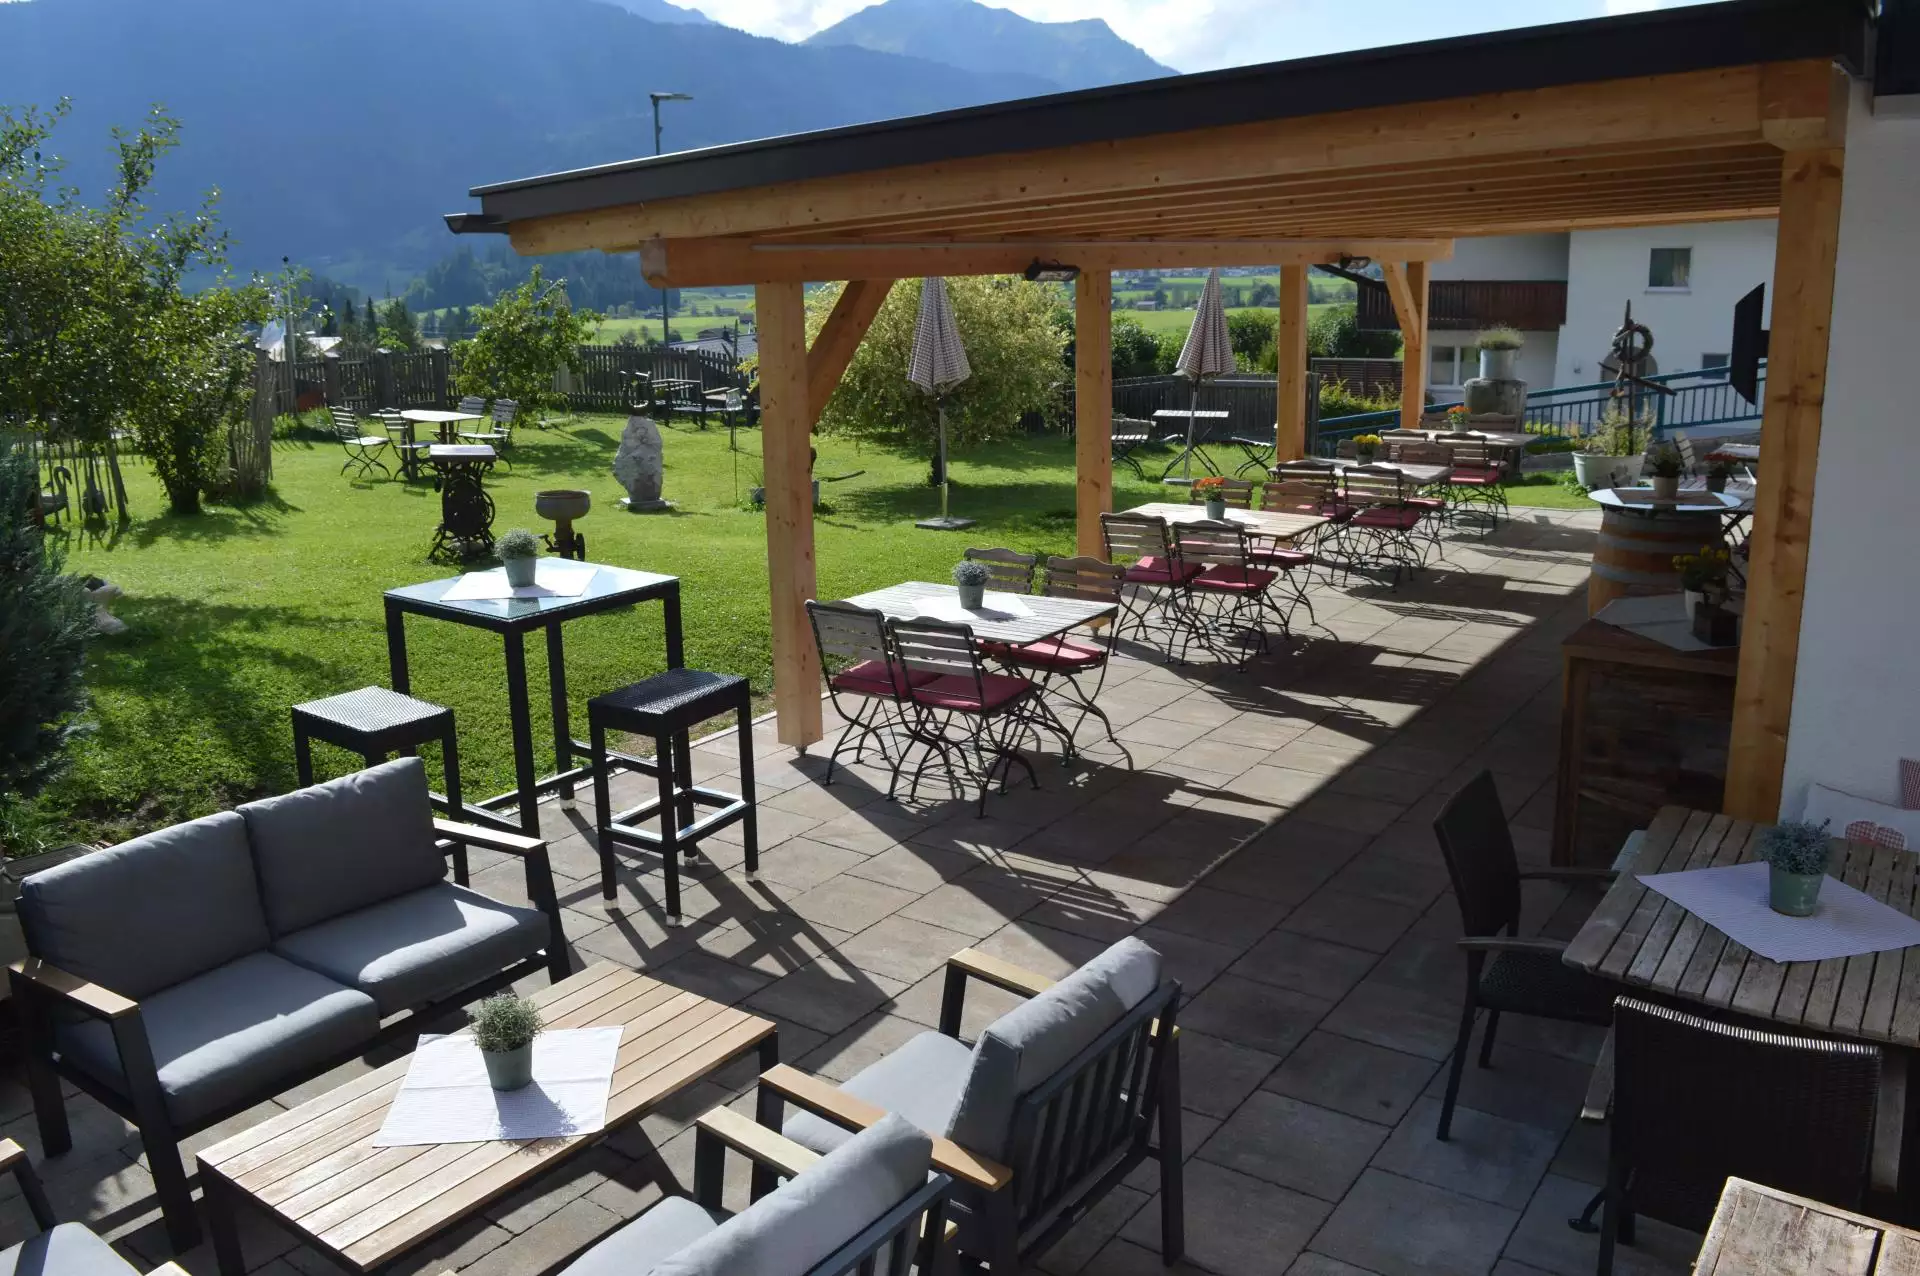 Zum Urviech #Willkommen#Restaurant#Wohneinheiten#Bildergalerie#Impressum#Sitemap#Sommer in den Bergen